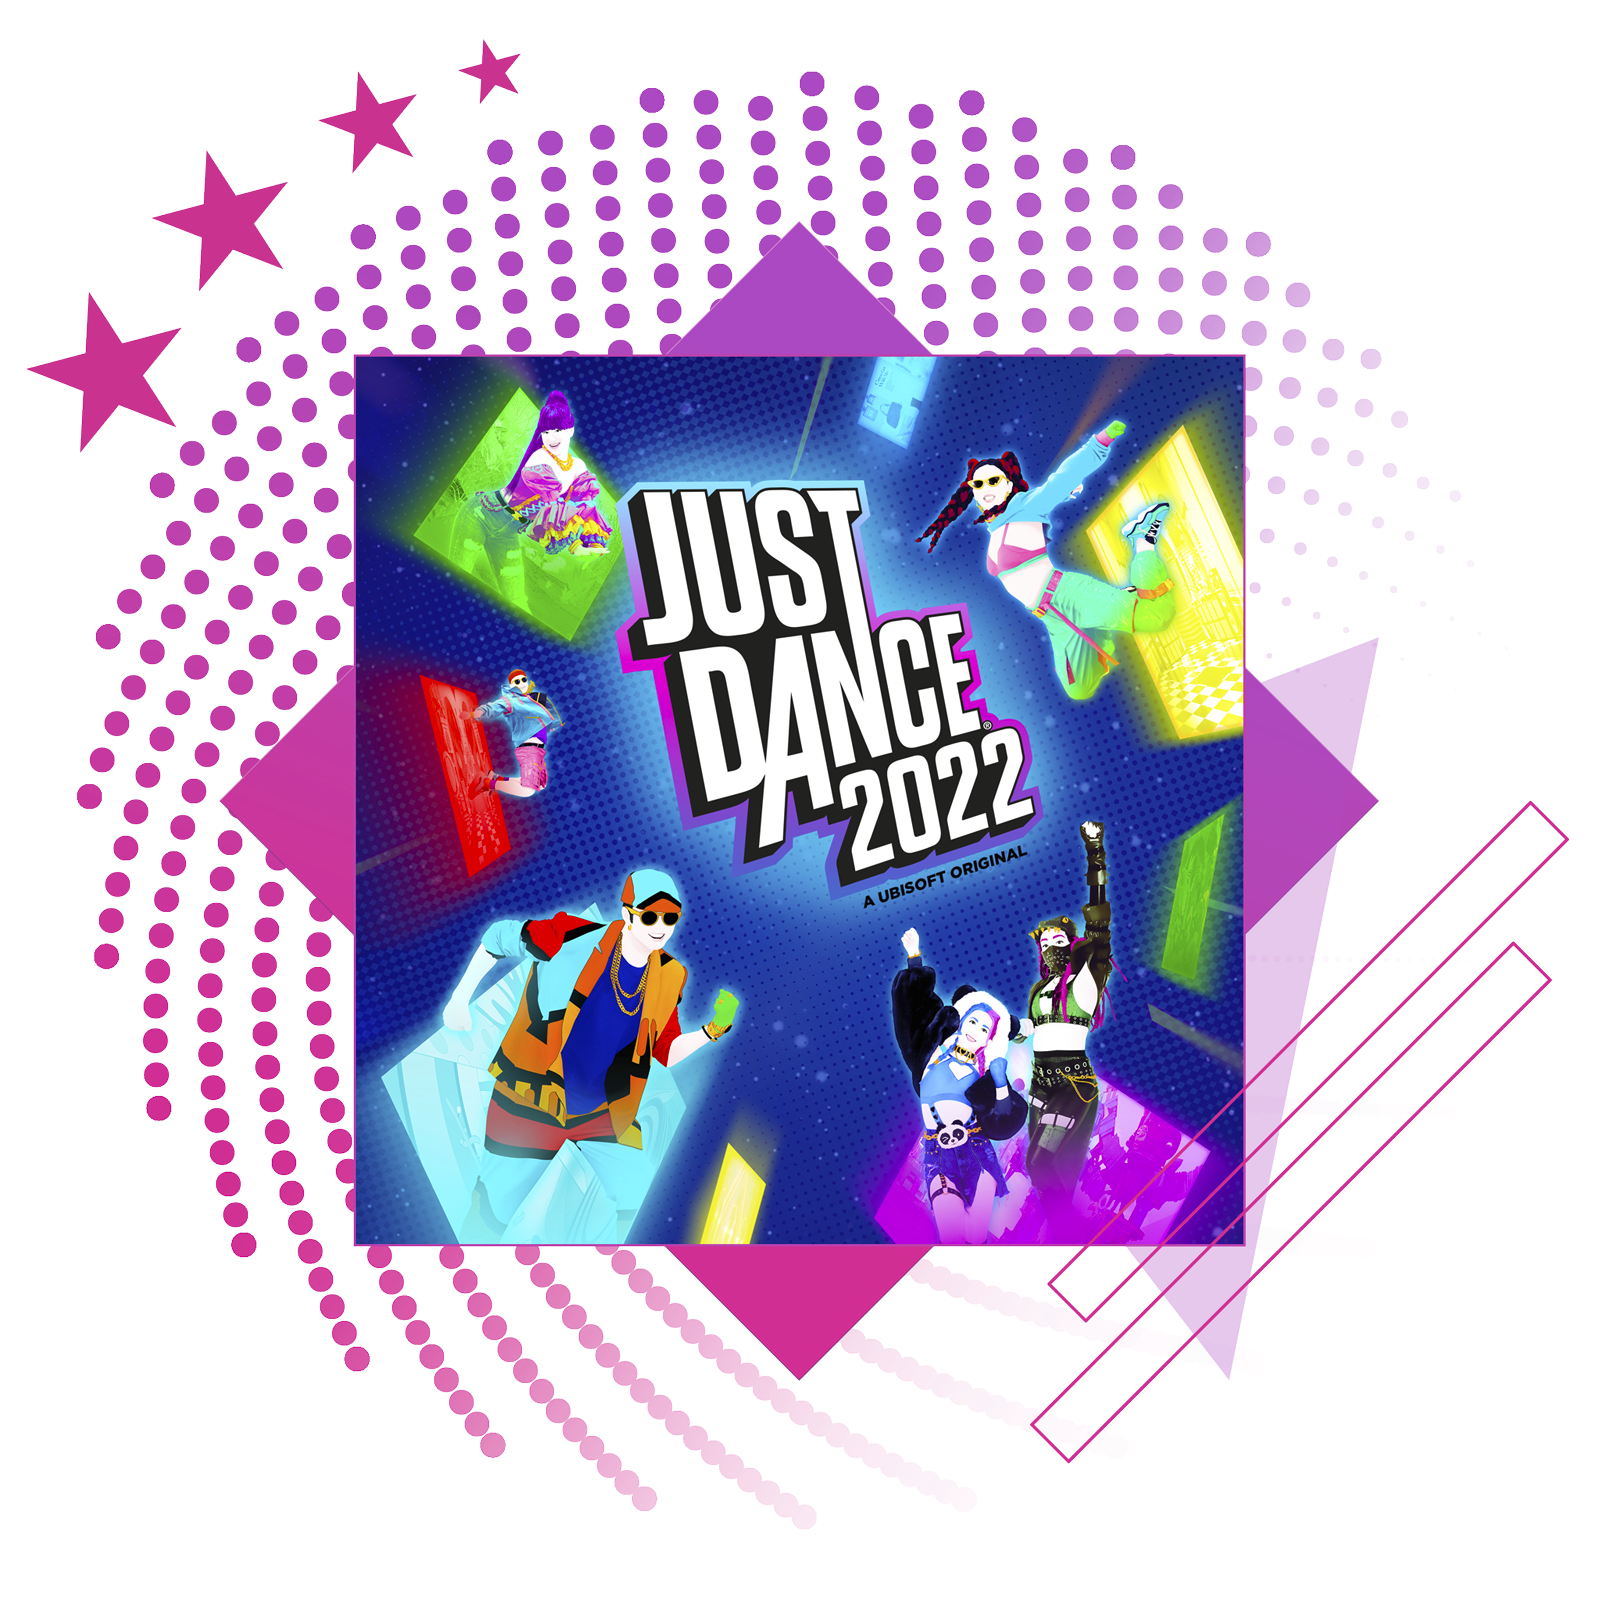 Bedste rytmespil-funktionsbillede med nøglegrafik fra Just Dance 2022.